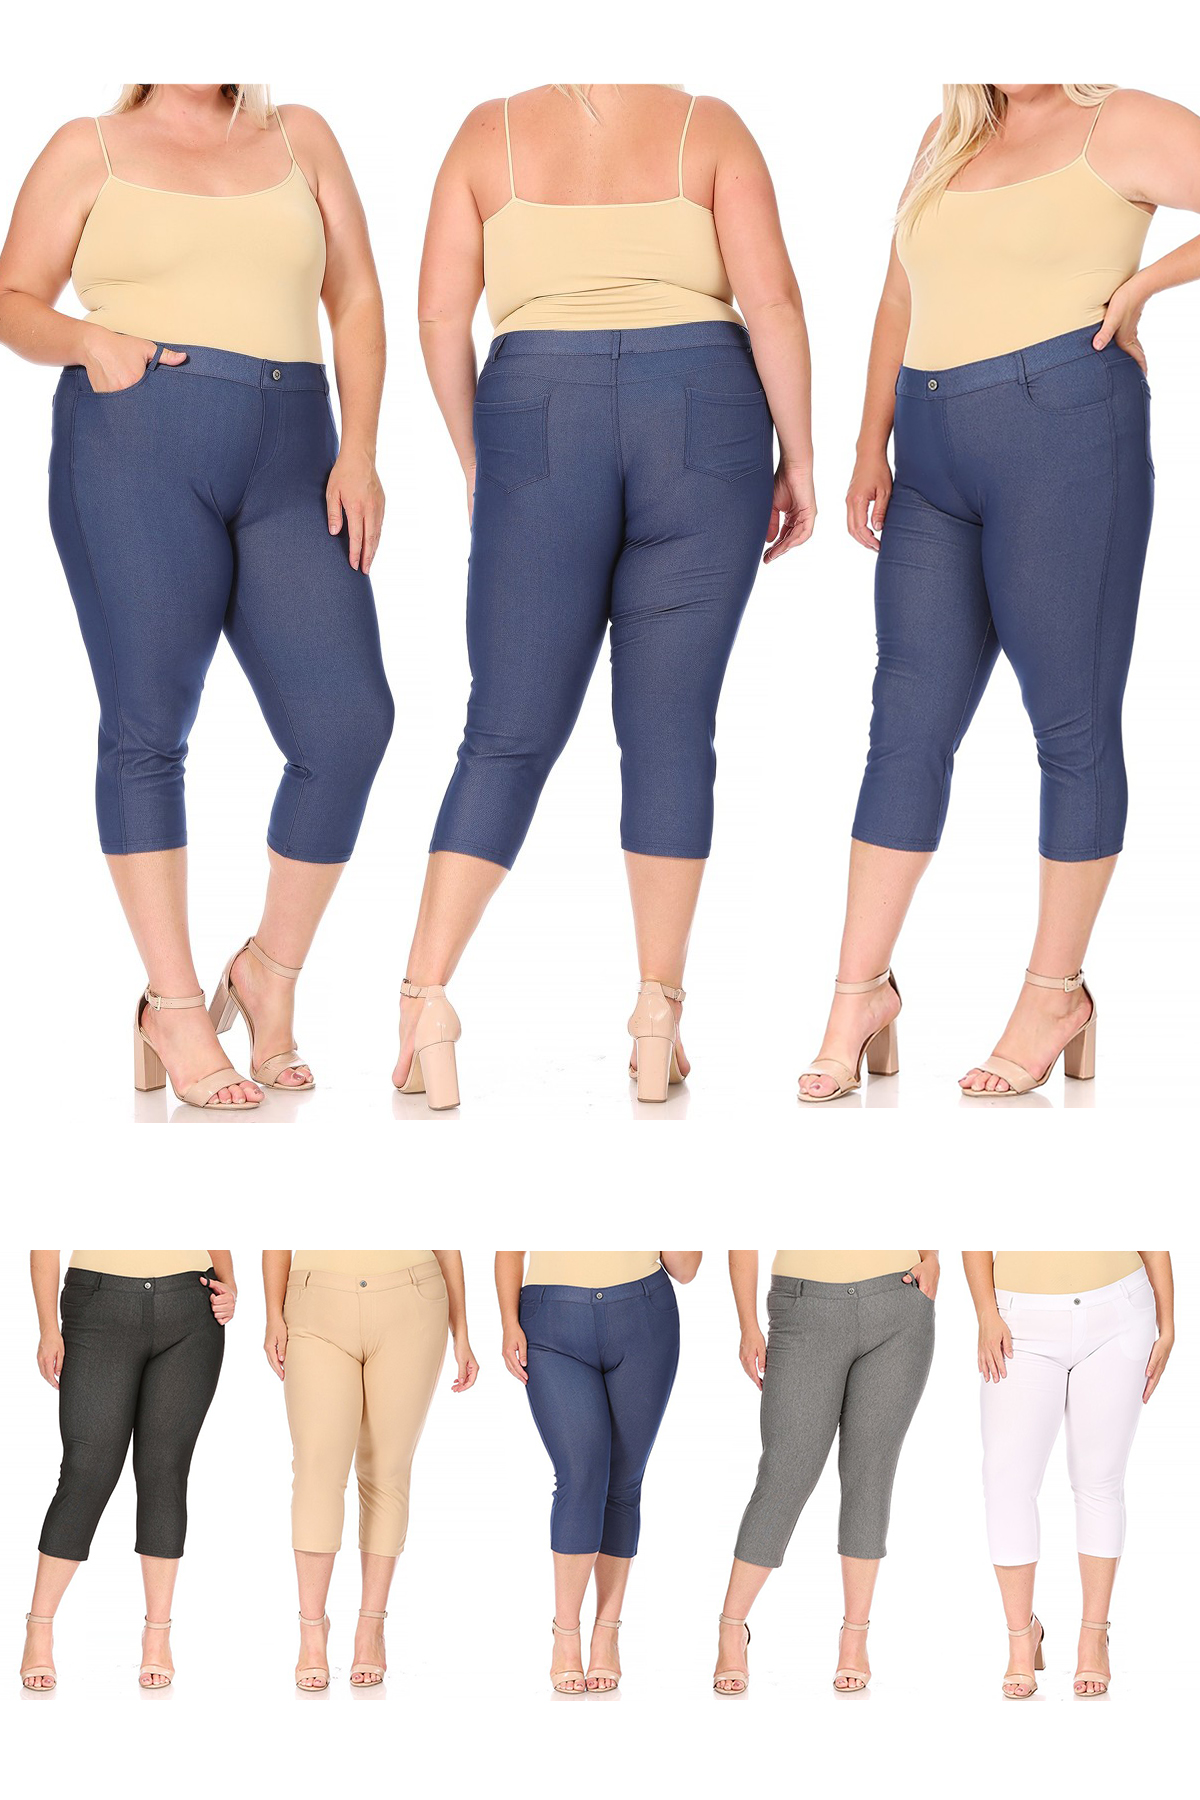 Moa Collection Women's Plus Size Casual Comfy Slim Pocket Jeans Capri Pants